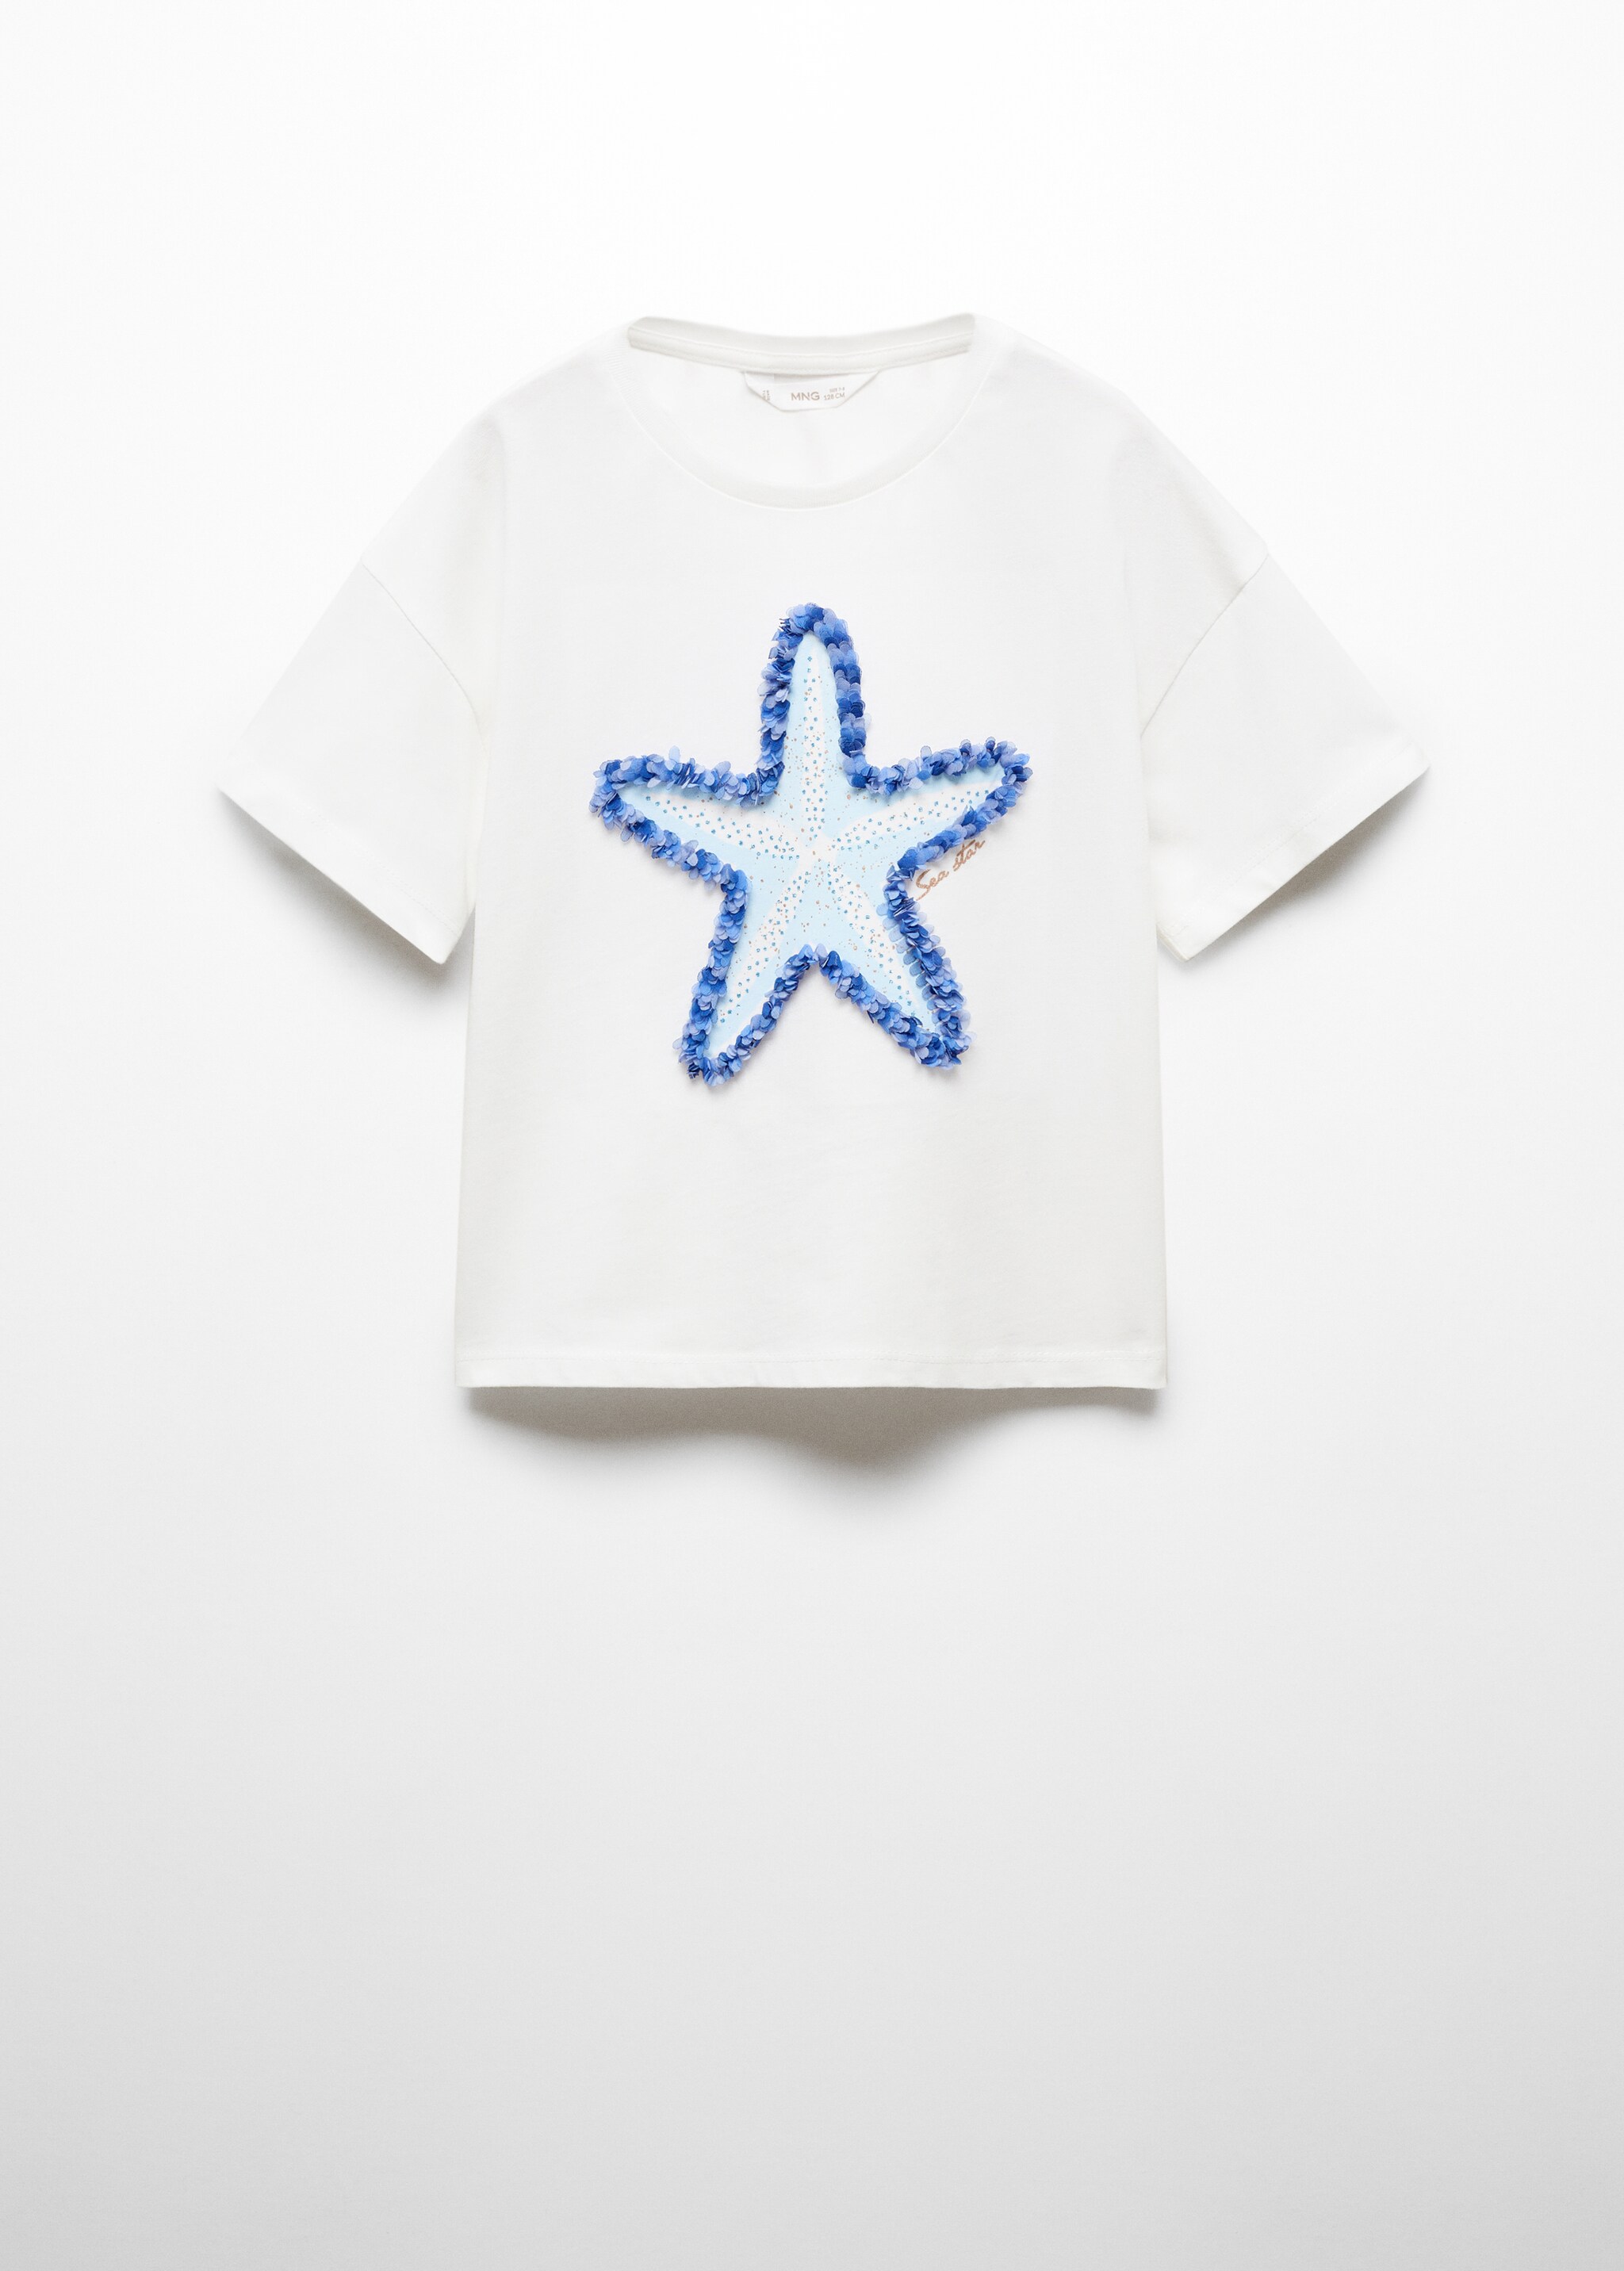 Camiseta estampada estrella - Artículo sin modelo